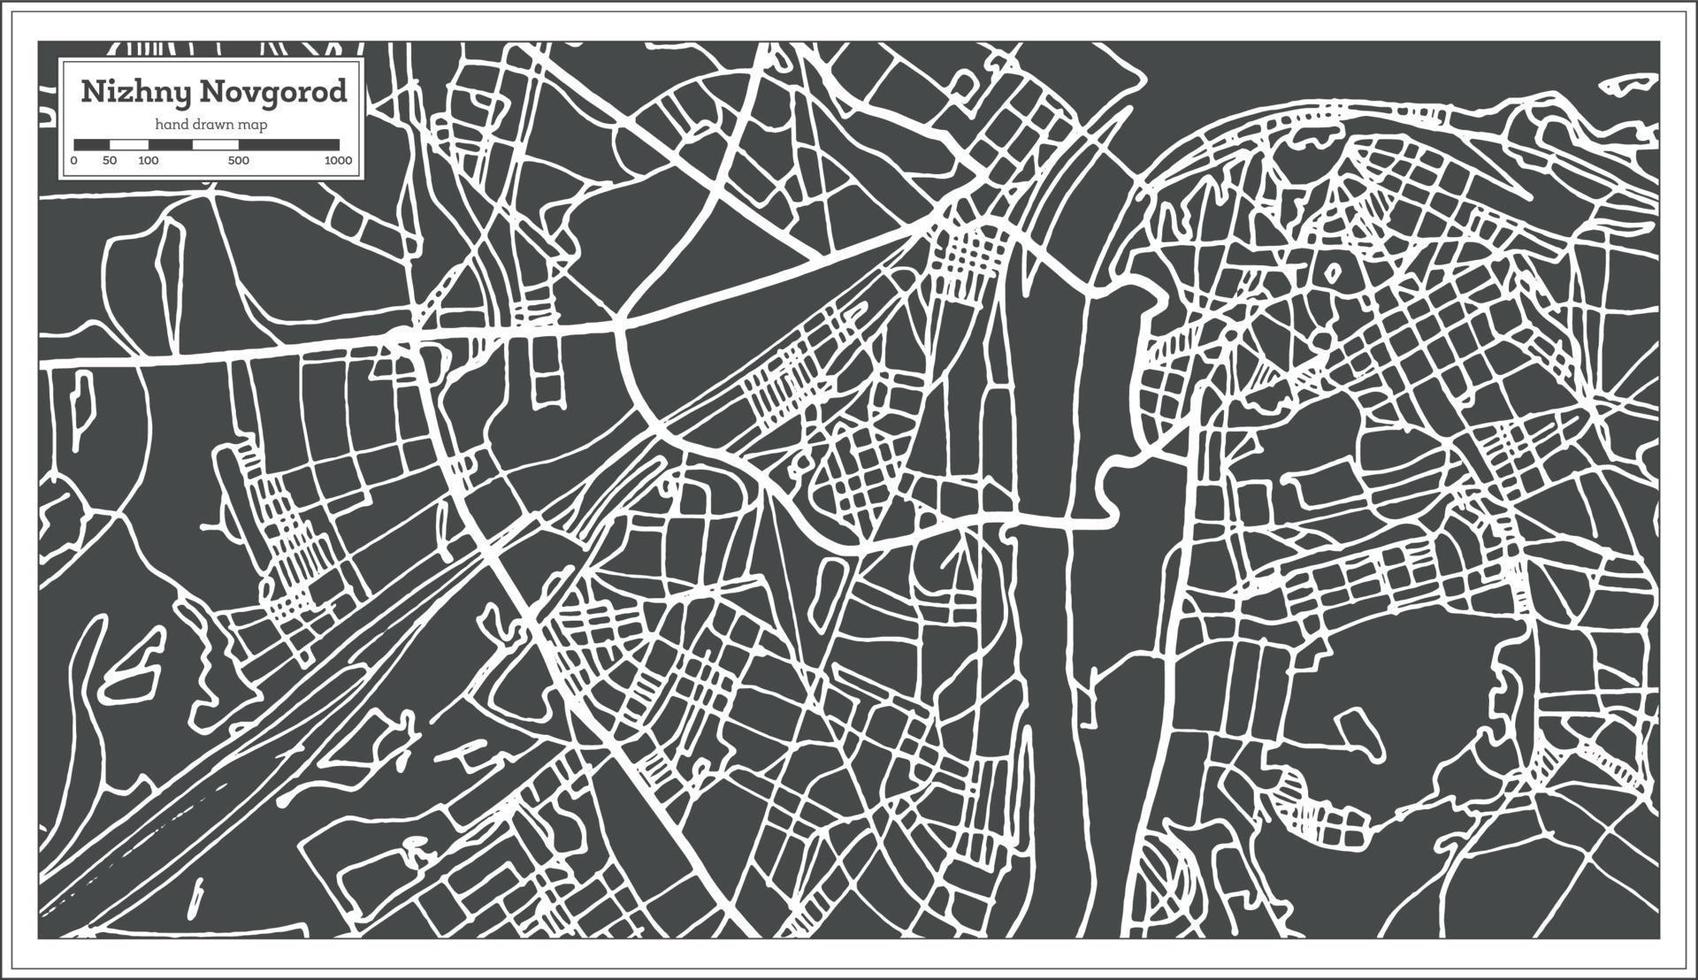 nizjni novgorod Rusland stad kaart in retro stijl. schets kaart. vector